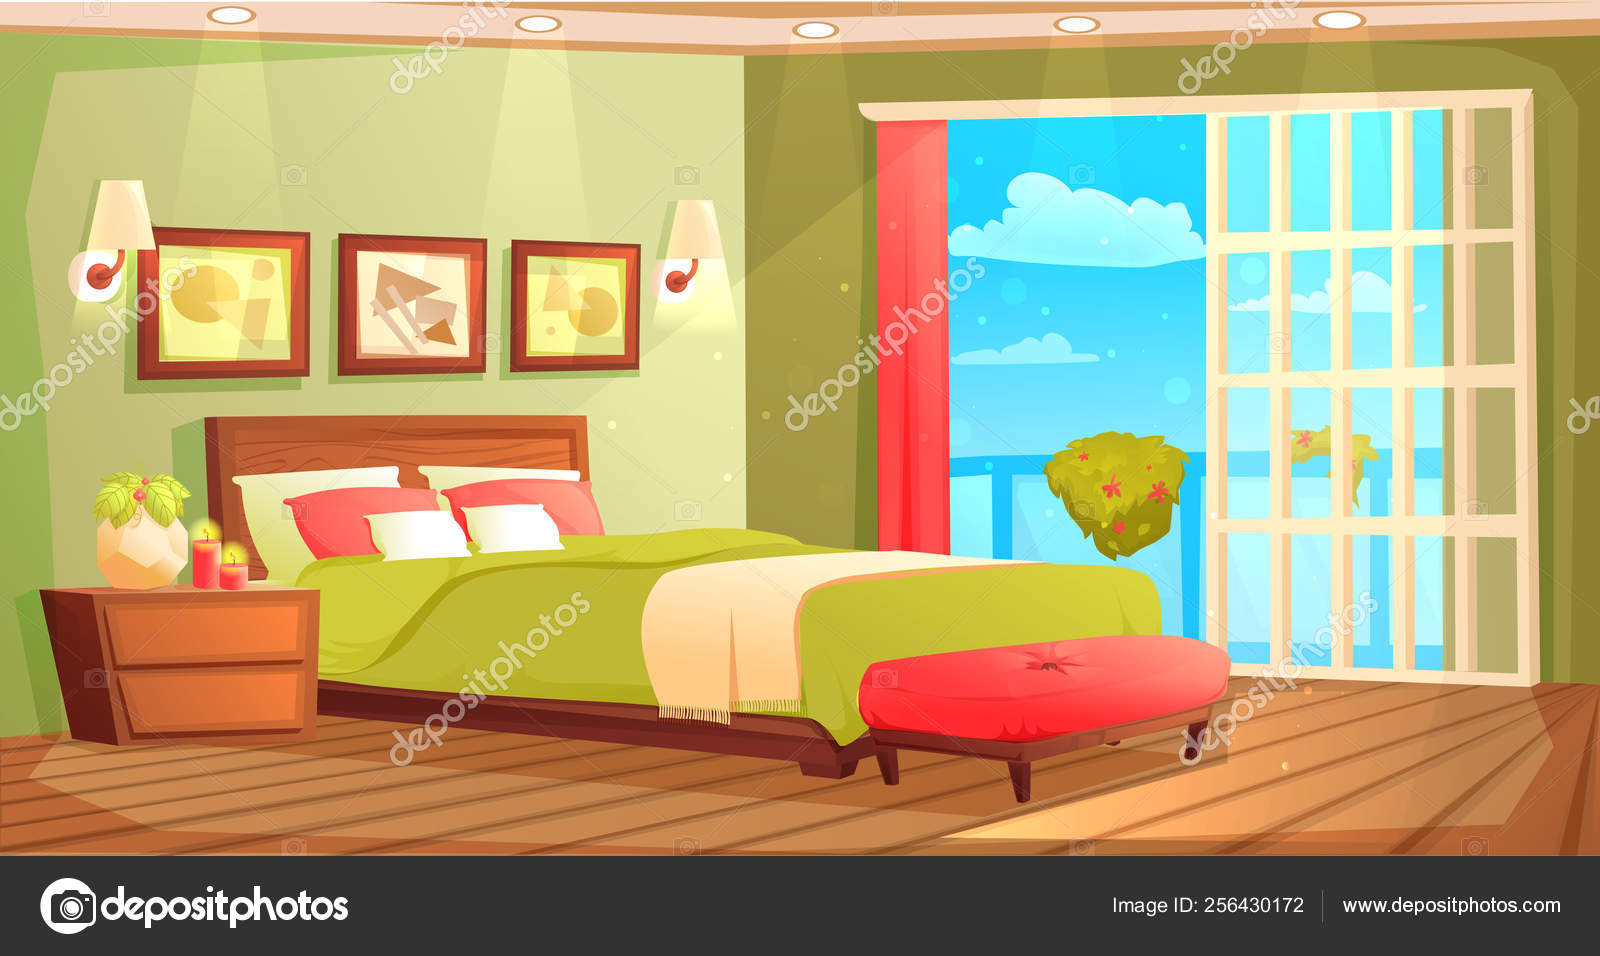 Bedroom cartoon Vector Art Stock Images | Depositphotos